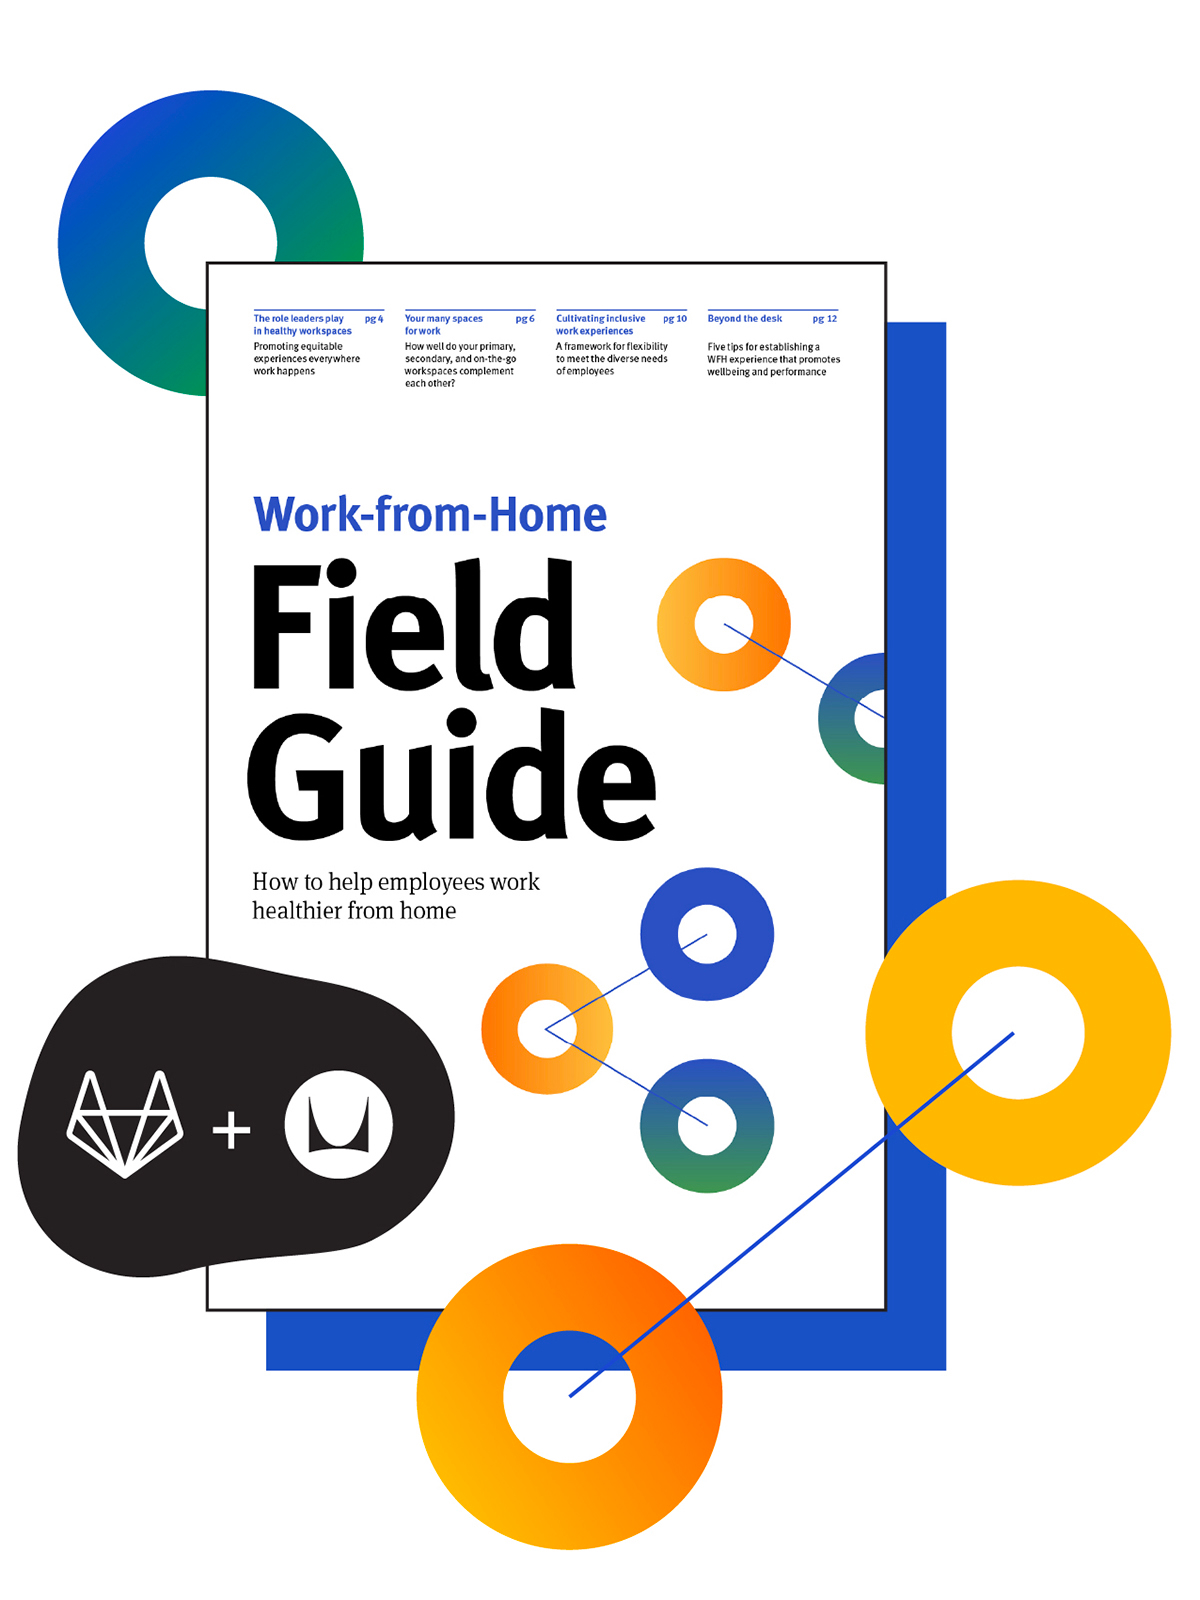 De voorpagina van de Work-from-Home gids: een samenwerking tussen de thuiswerkdeskundigen bij GitLab en Herman Miller.